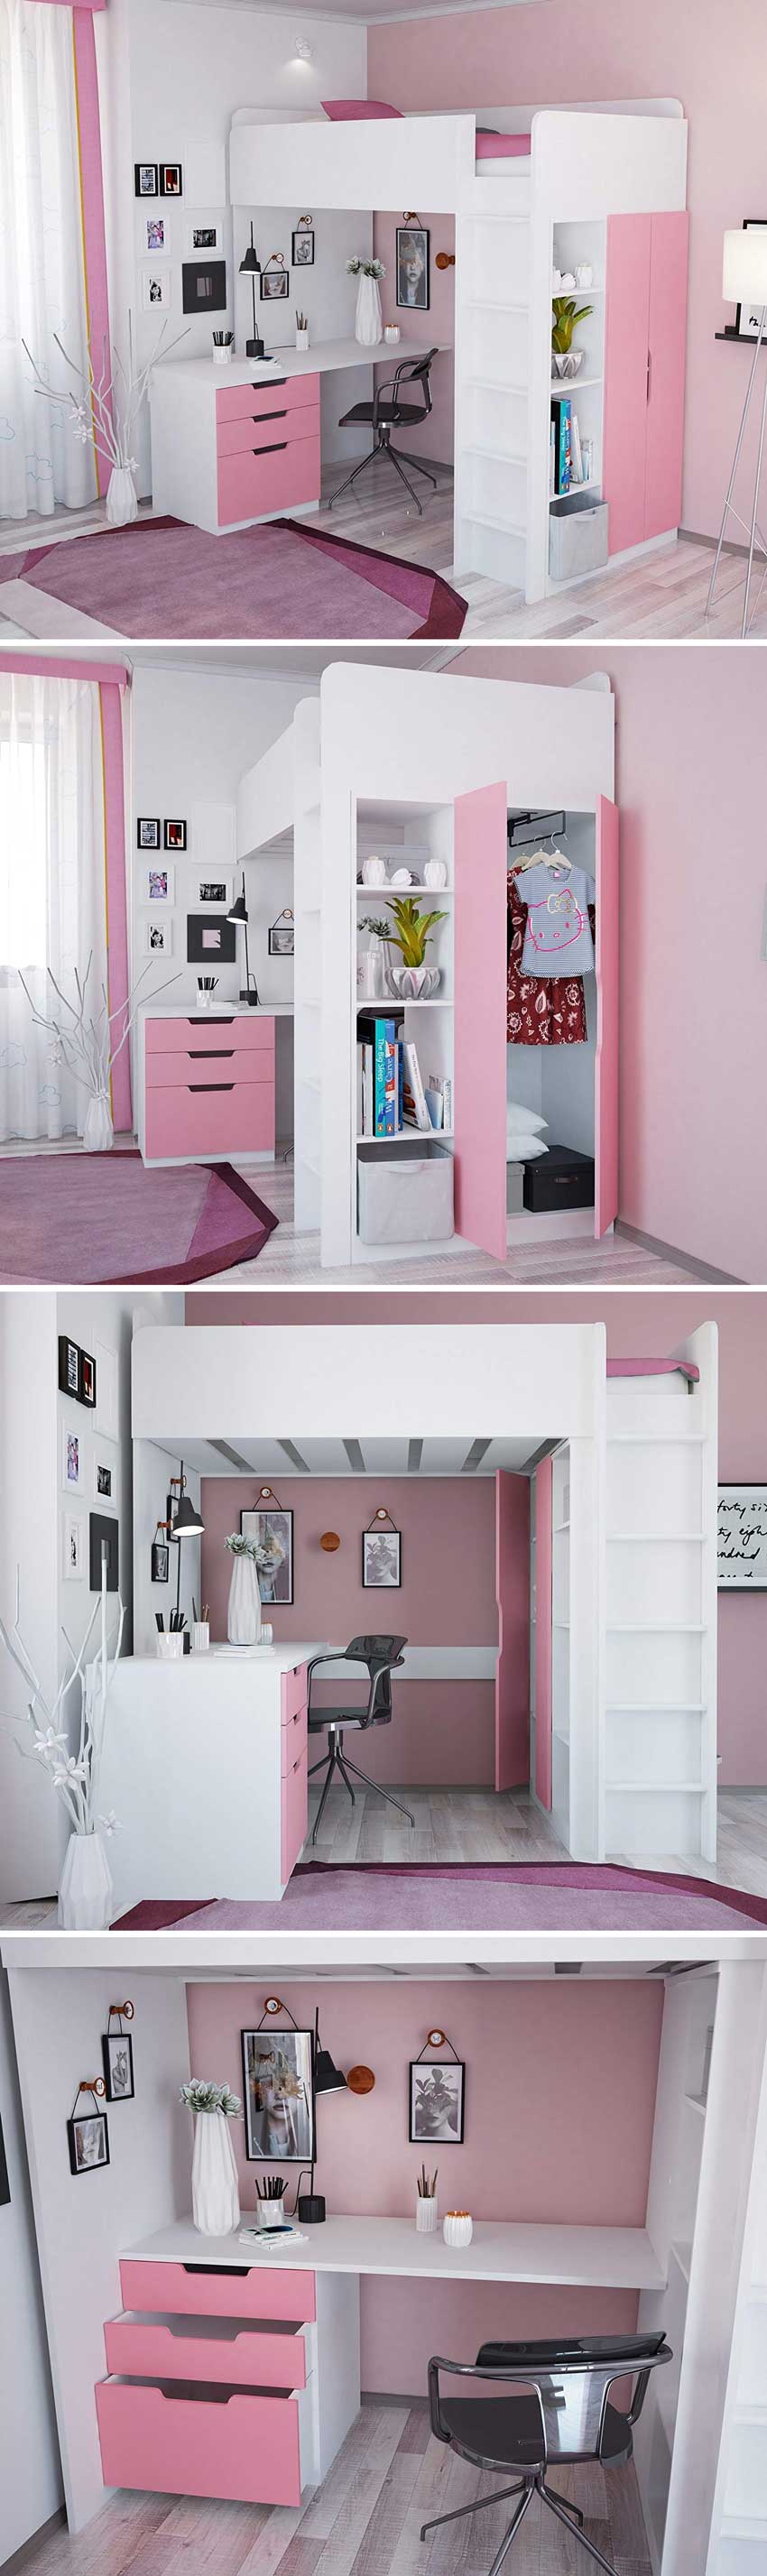 cameretta rosa a soppalco con armadio e scrivania sotto, ottima soluzione salvaspazio.